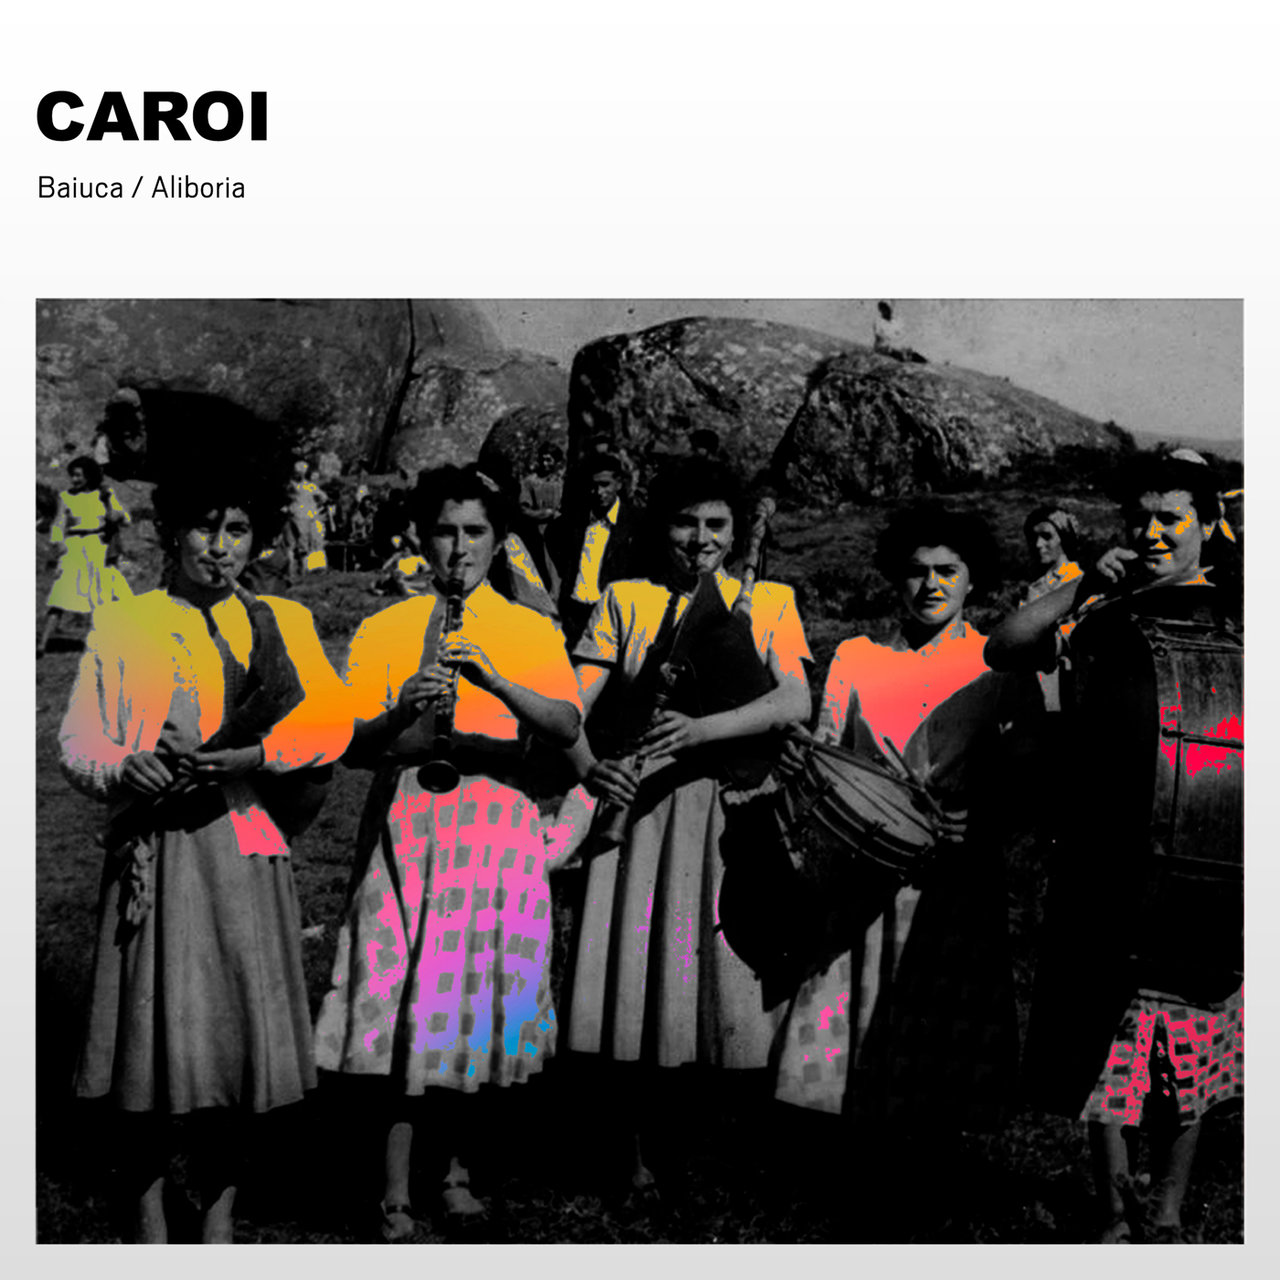 Baiuca featuring Aliboria — Caroi cover artwork